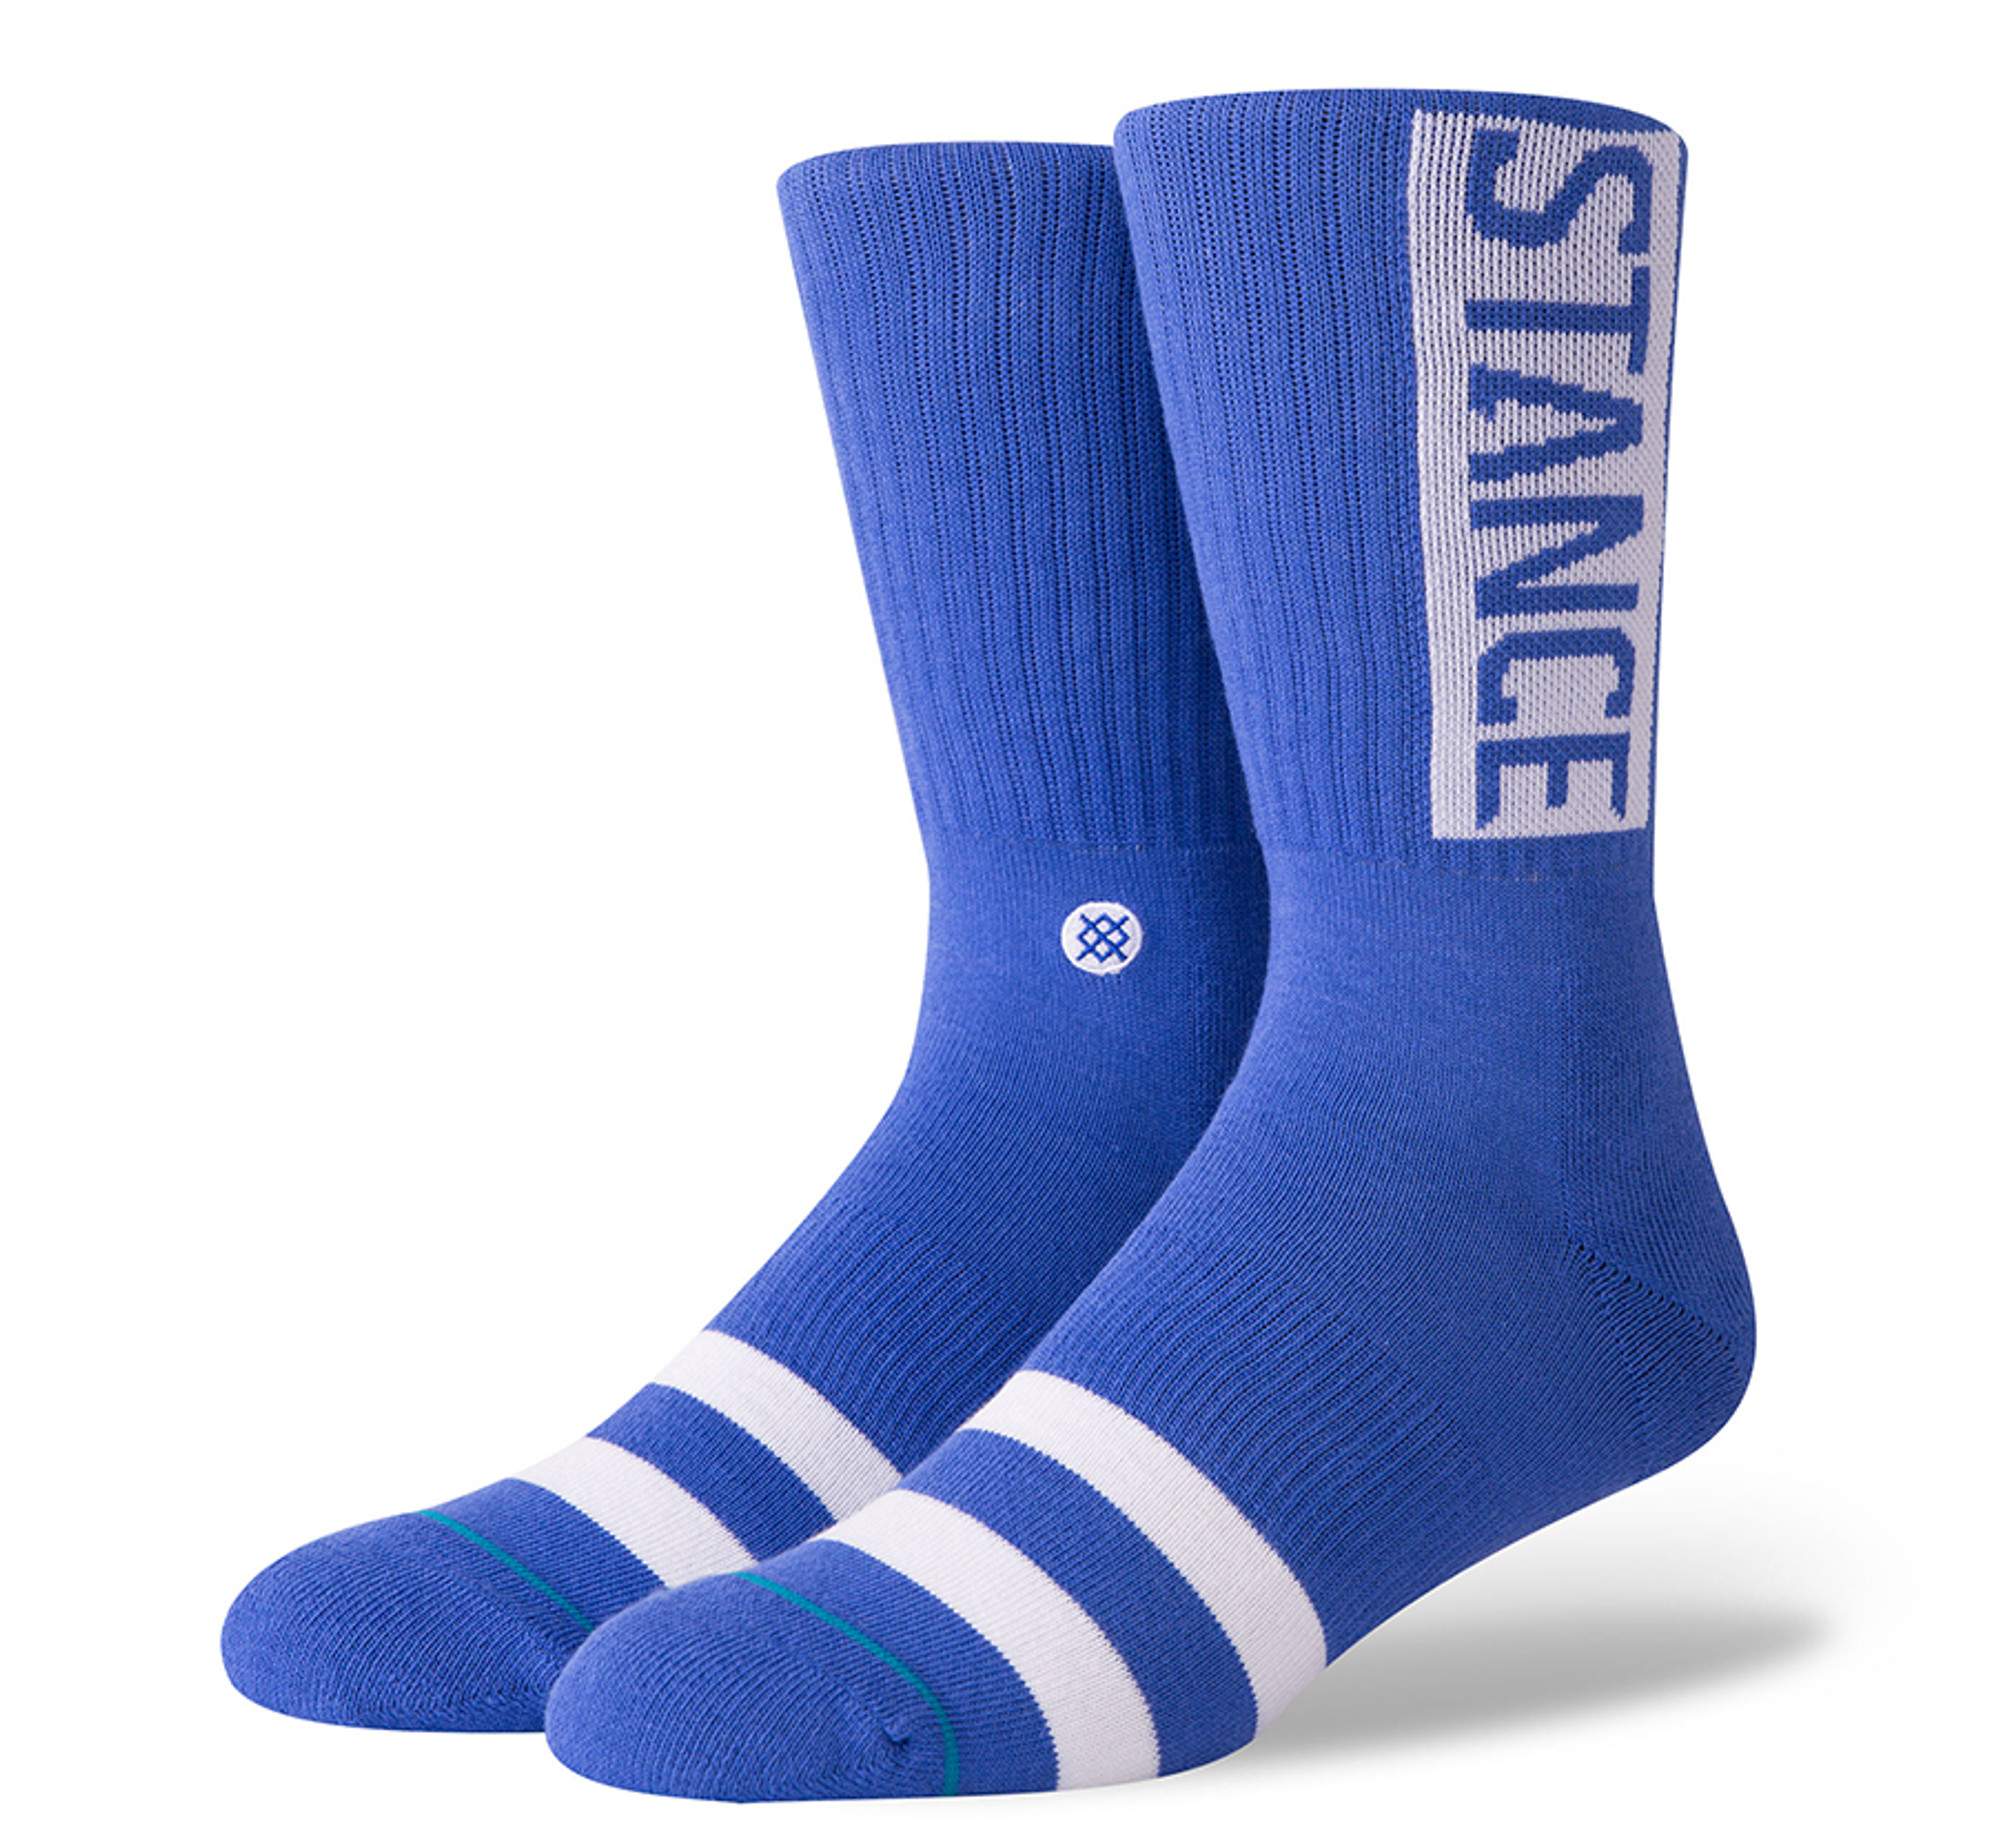 Stance OG Socks | Shop online now at Sunlight Station